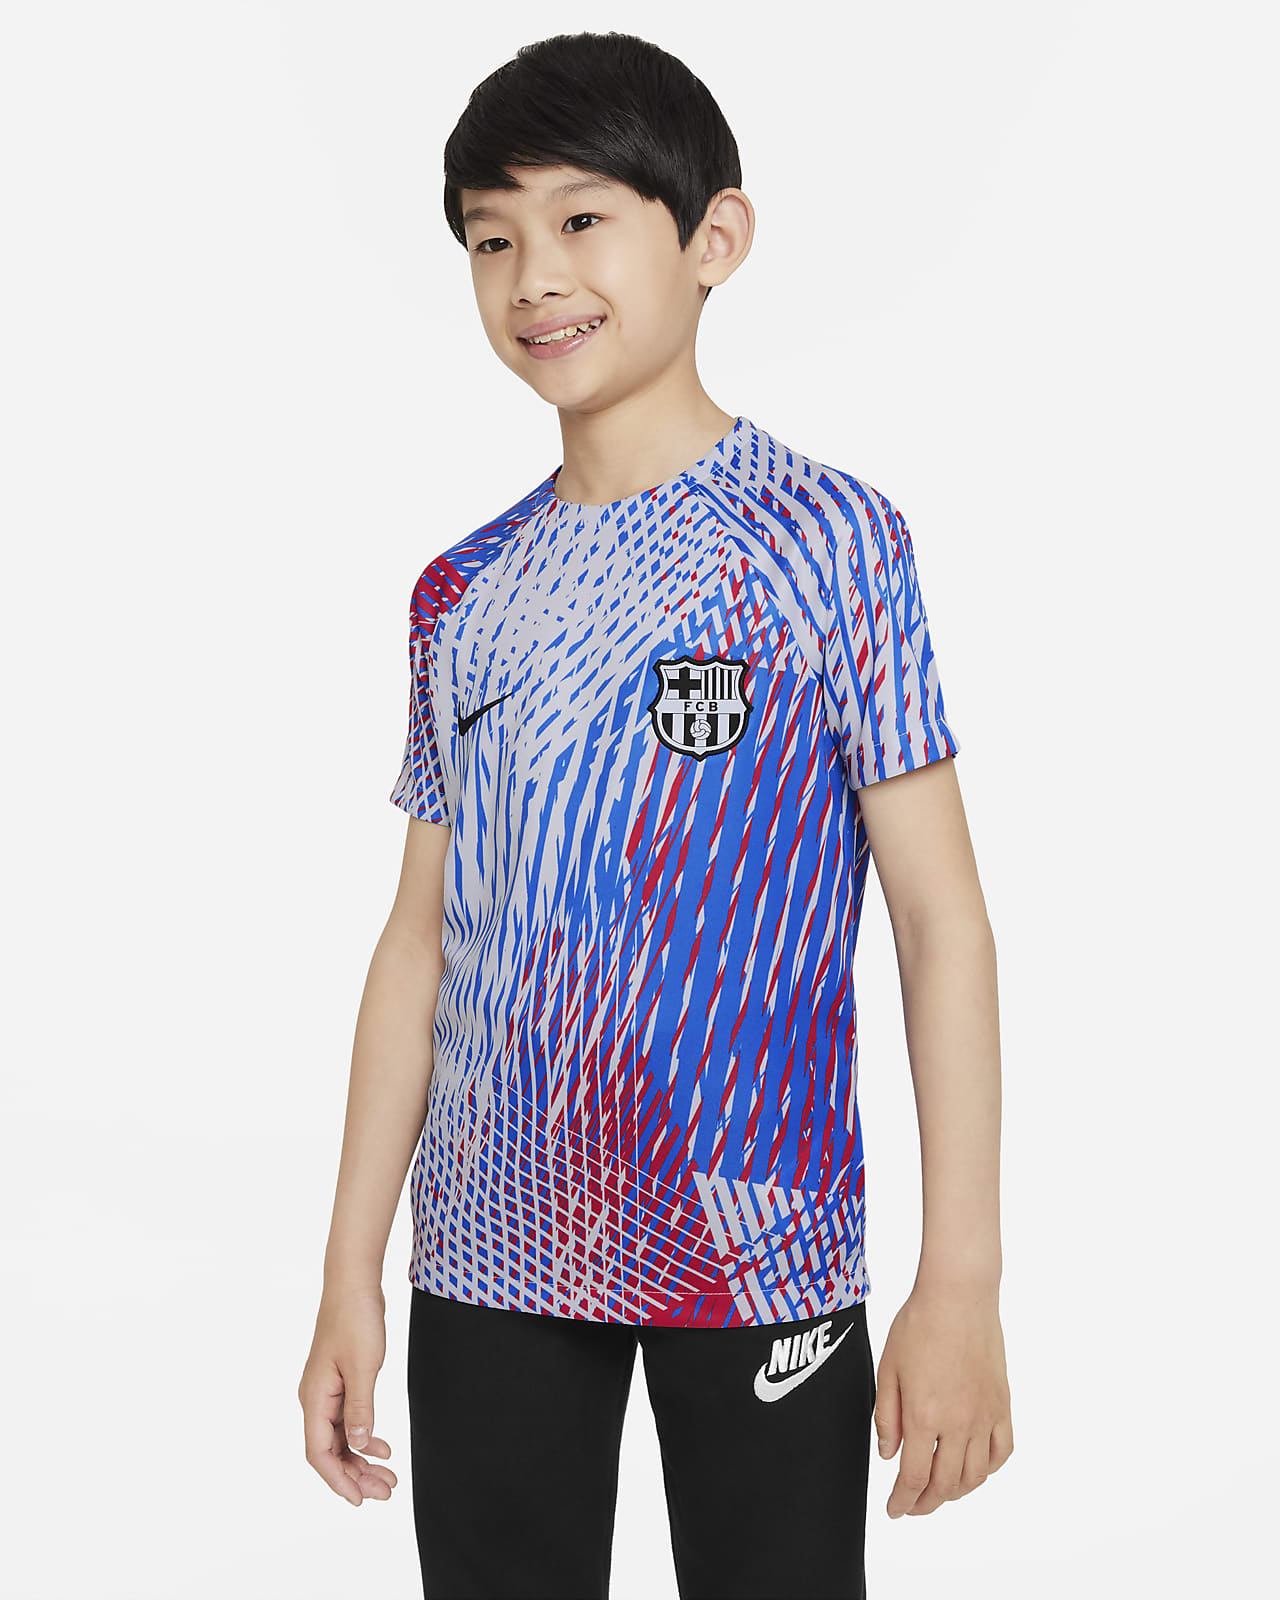 Playera de fútbol para antes del partido Nike Dri-FIT para niños talla FC Barcelona.